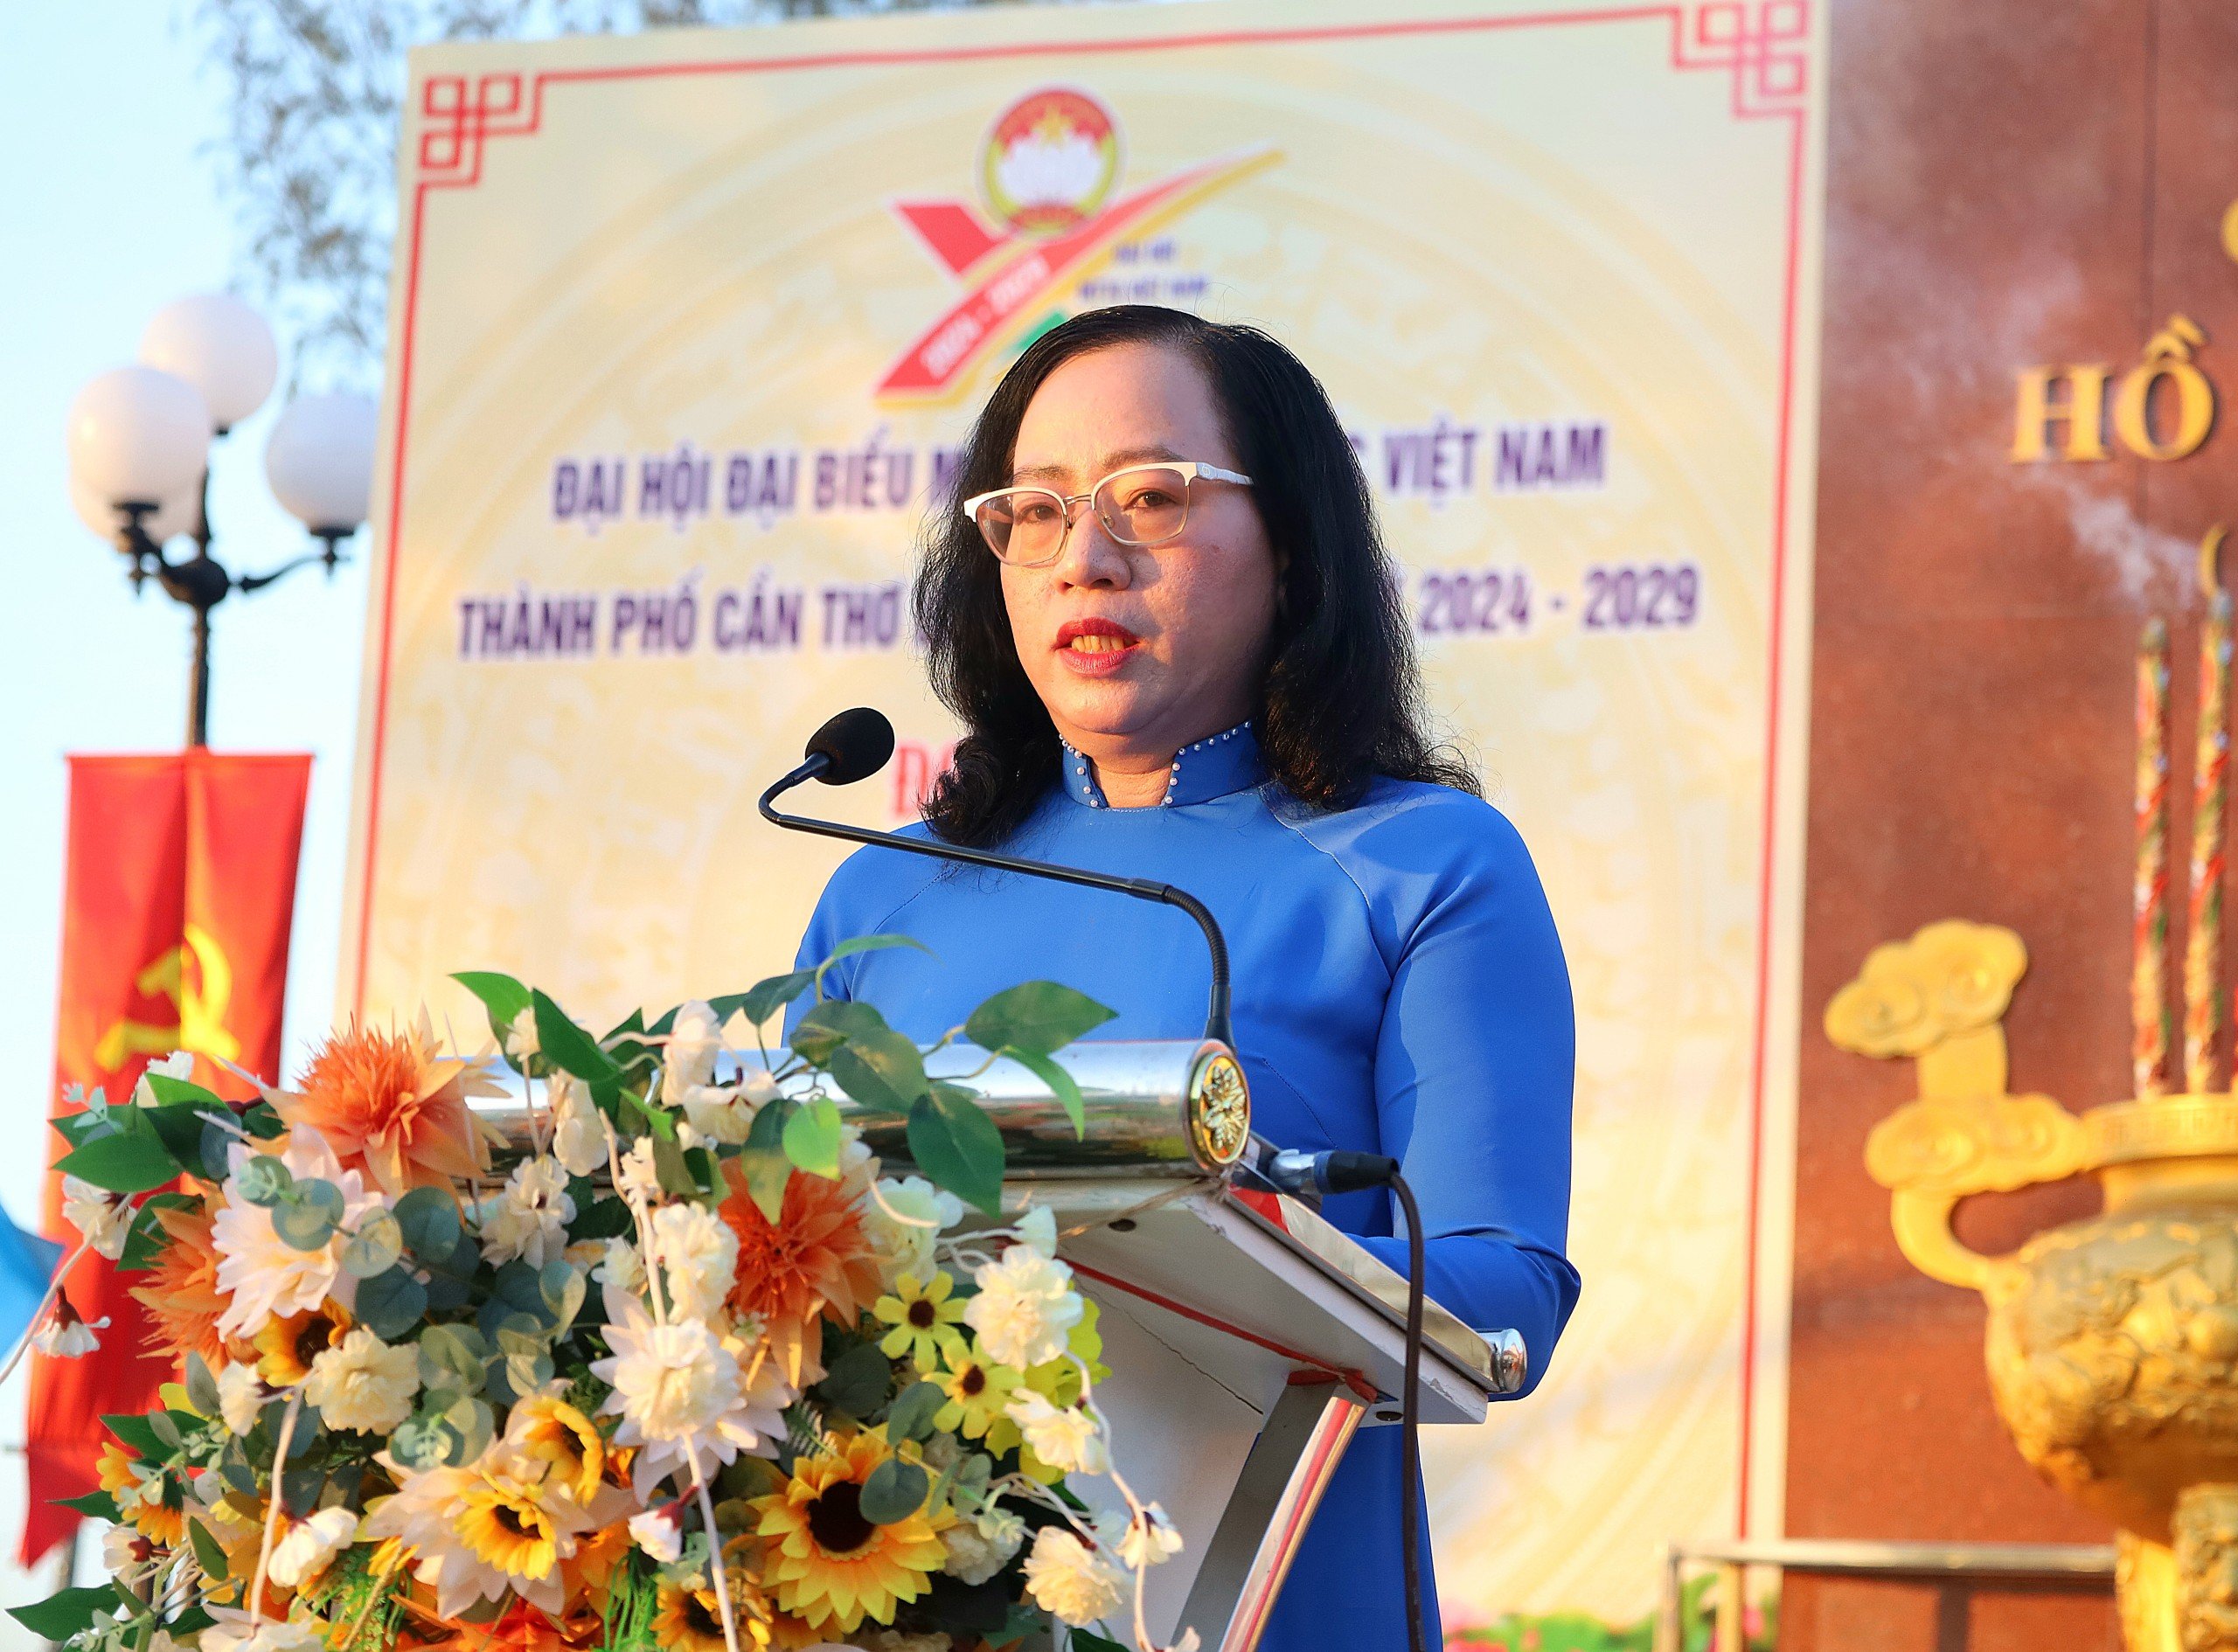 Bà Nguyễn Thúy Hằng - Phó Chủ tịch Uỷ ban MTTQ Việt Nam TP. Cần Thơ thay mặt Ban Thường trực Ủy ban MTTQ Việt Nam thành phố báo công dâng Bác những kết quả đã đạt được trong nhiệm kỳ qua.